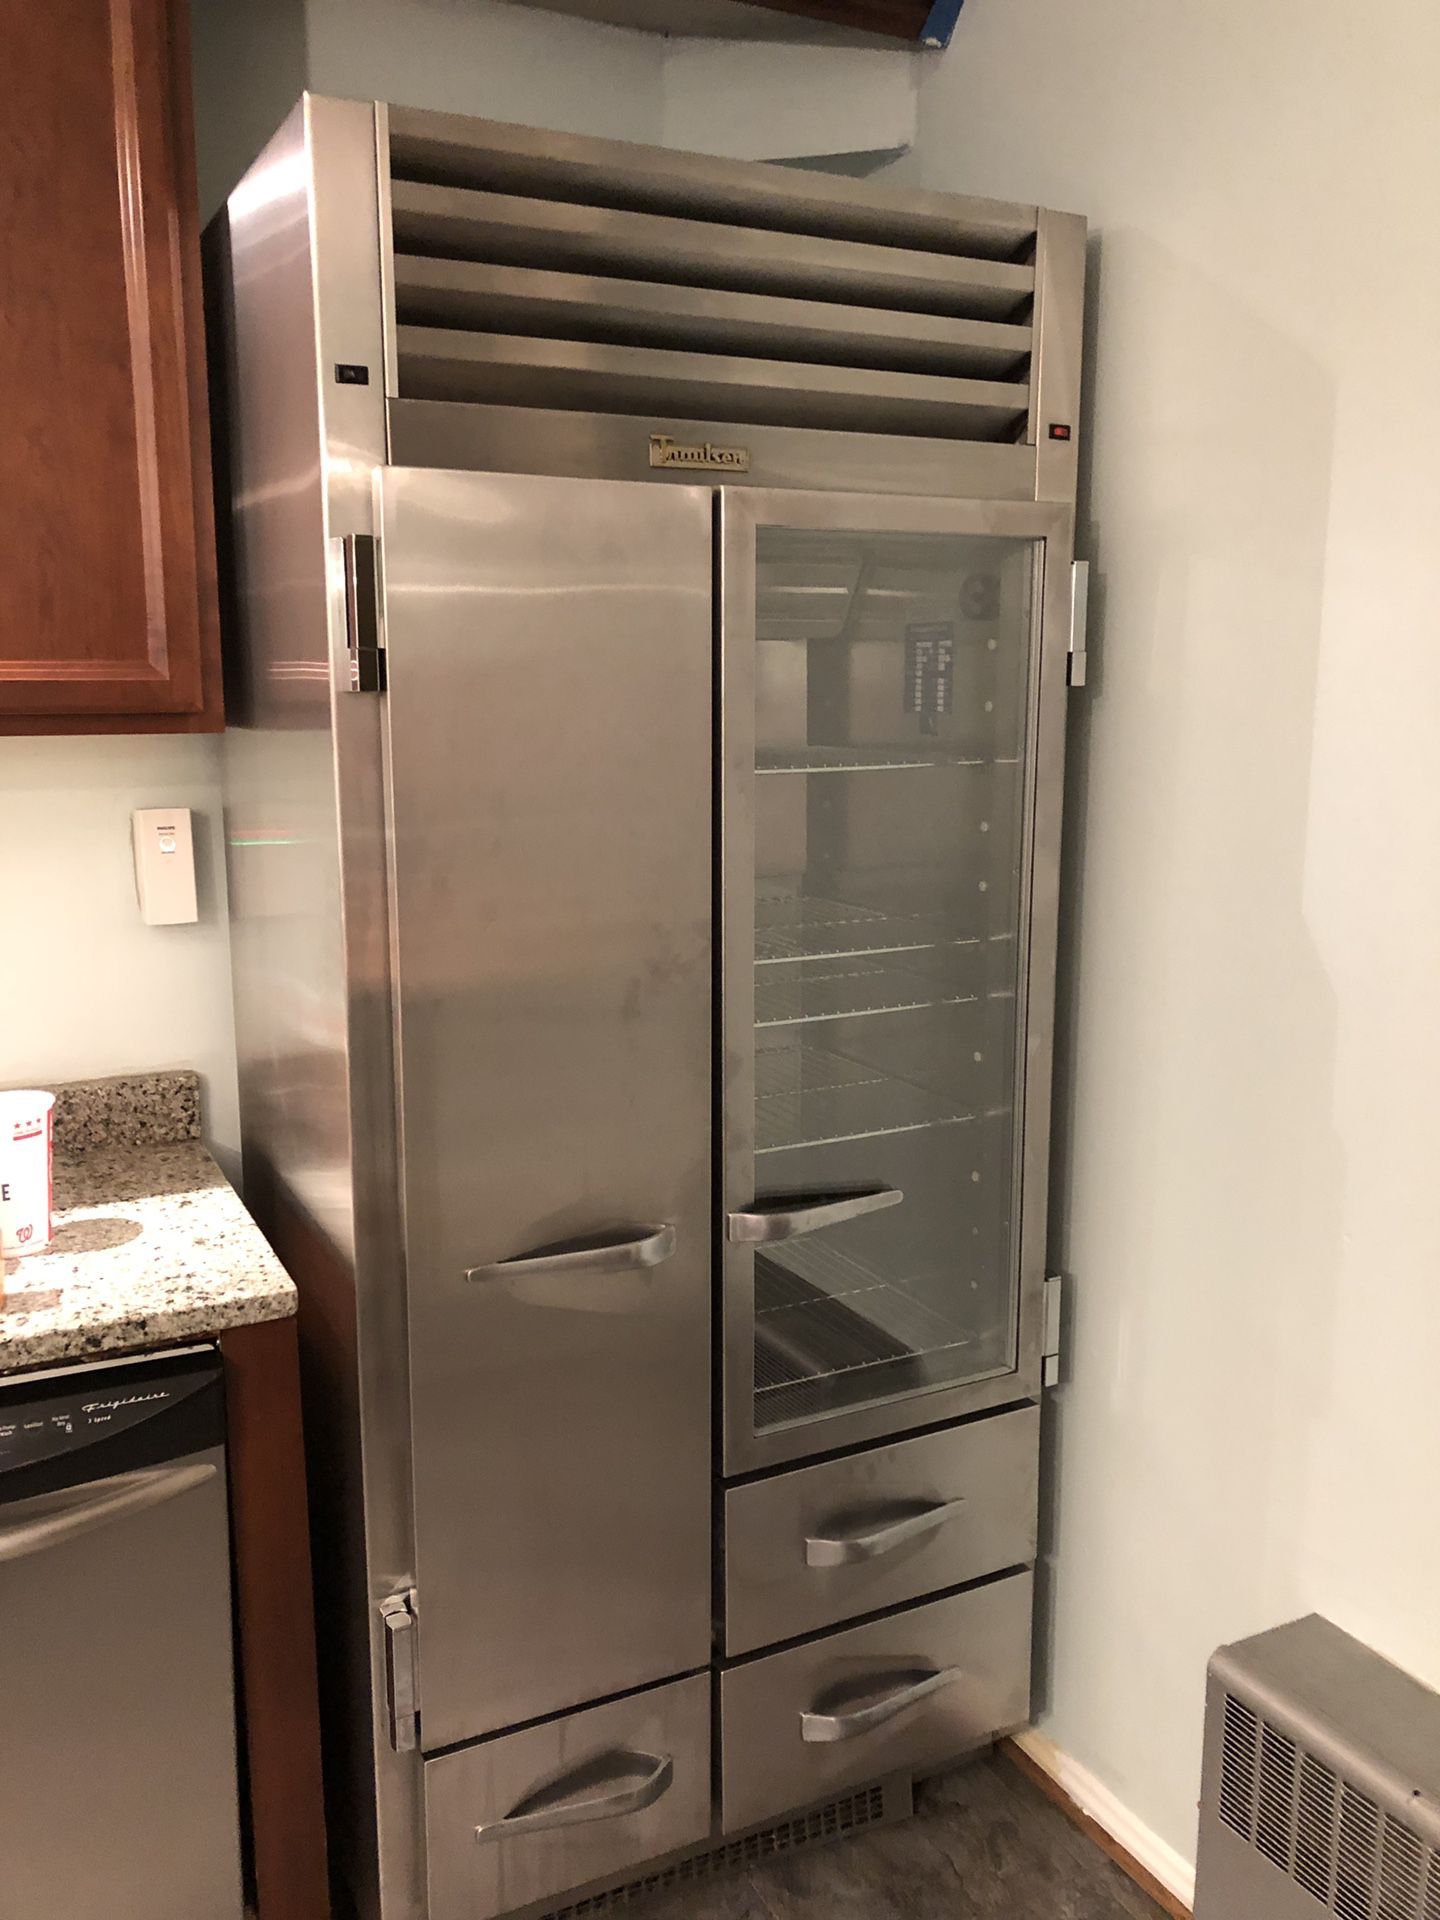 Traulsen glass door refrigerator/freezer